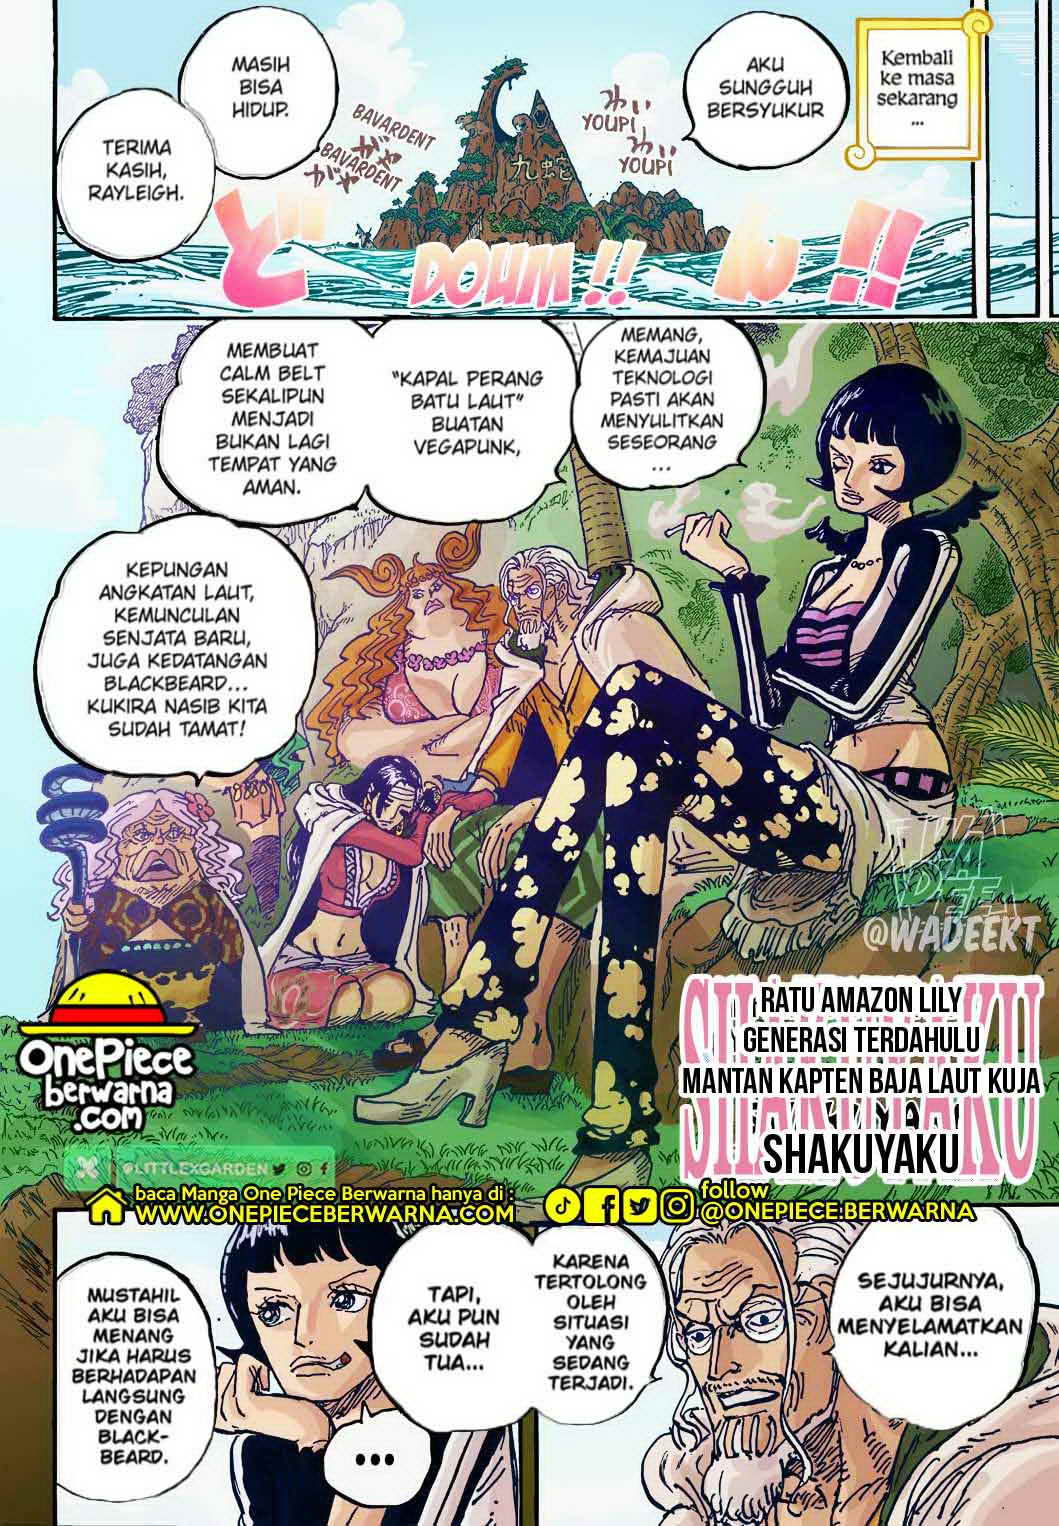 One Piece Berwarna Chapter 1059